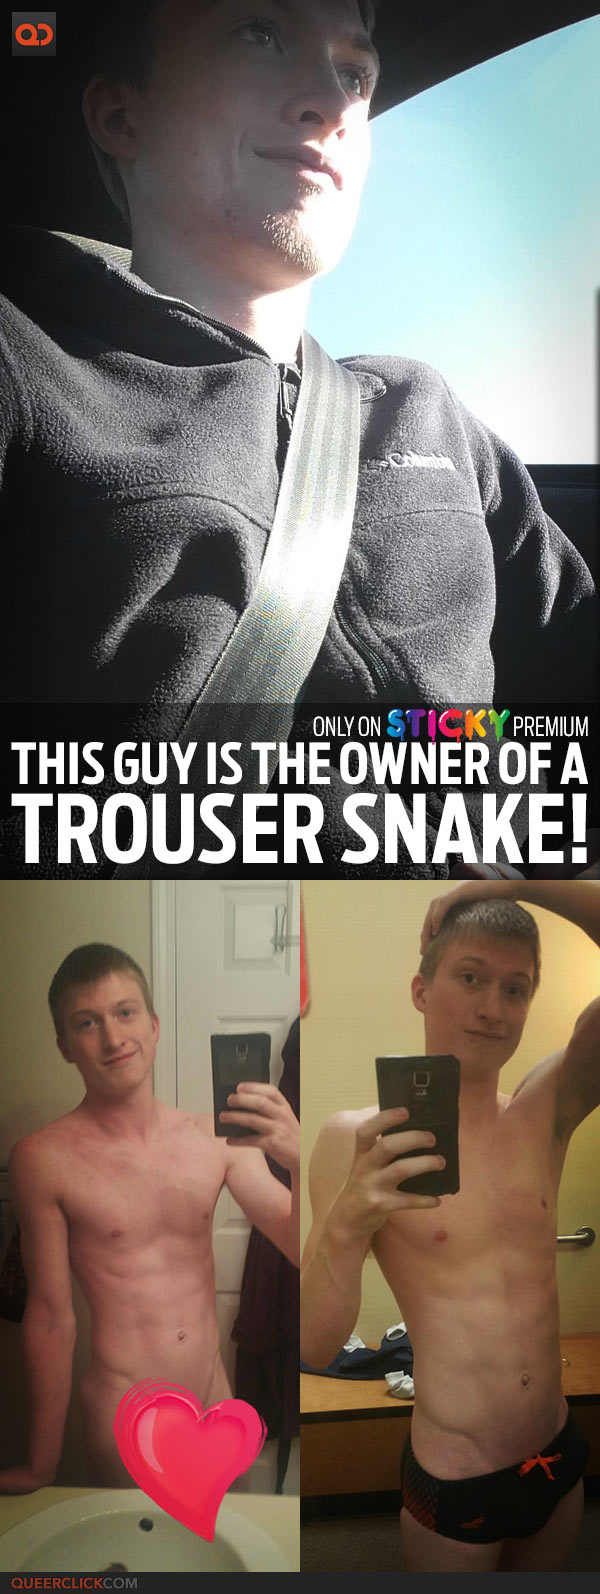 qc-sticky-trouser_snake-teaser